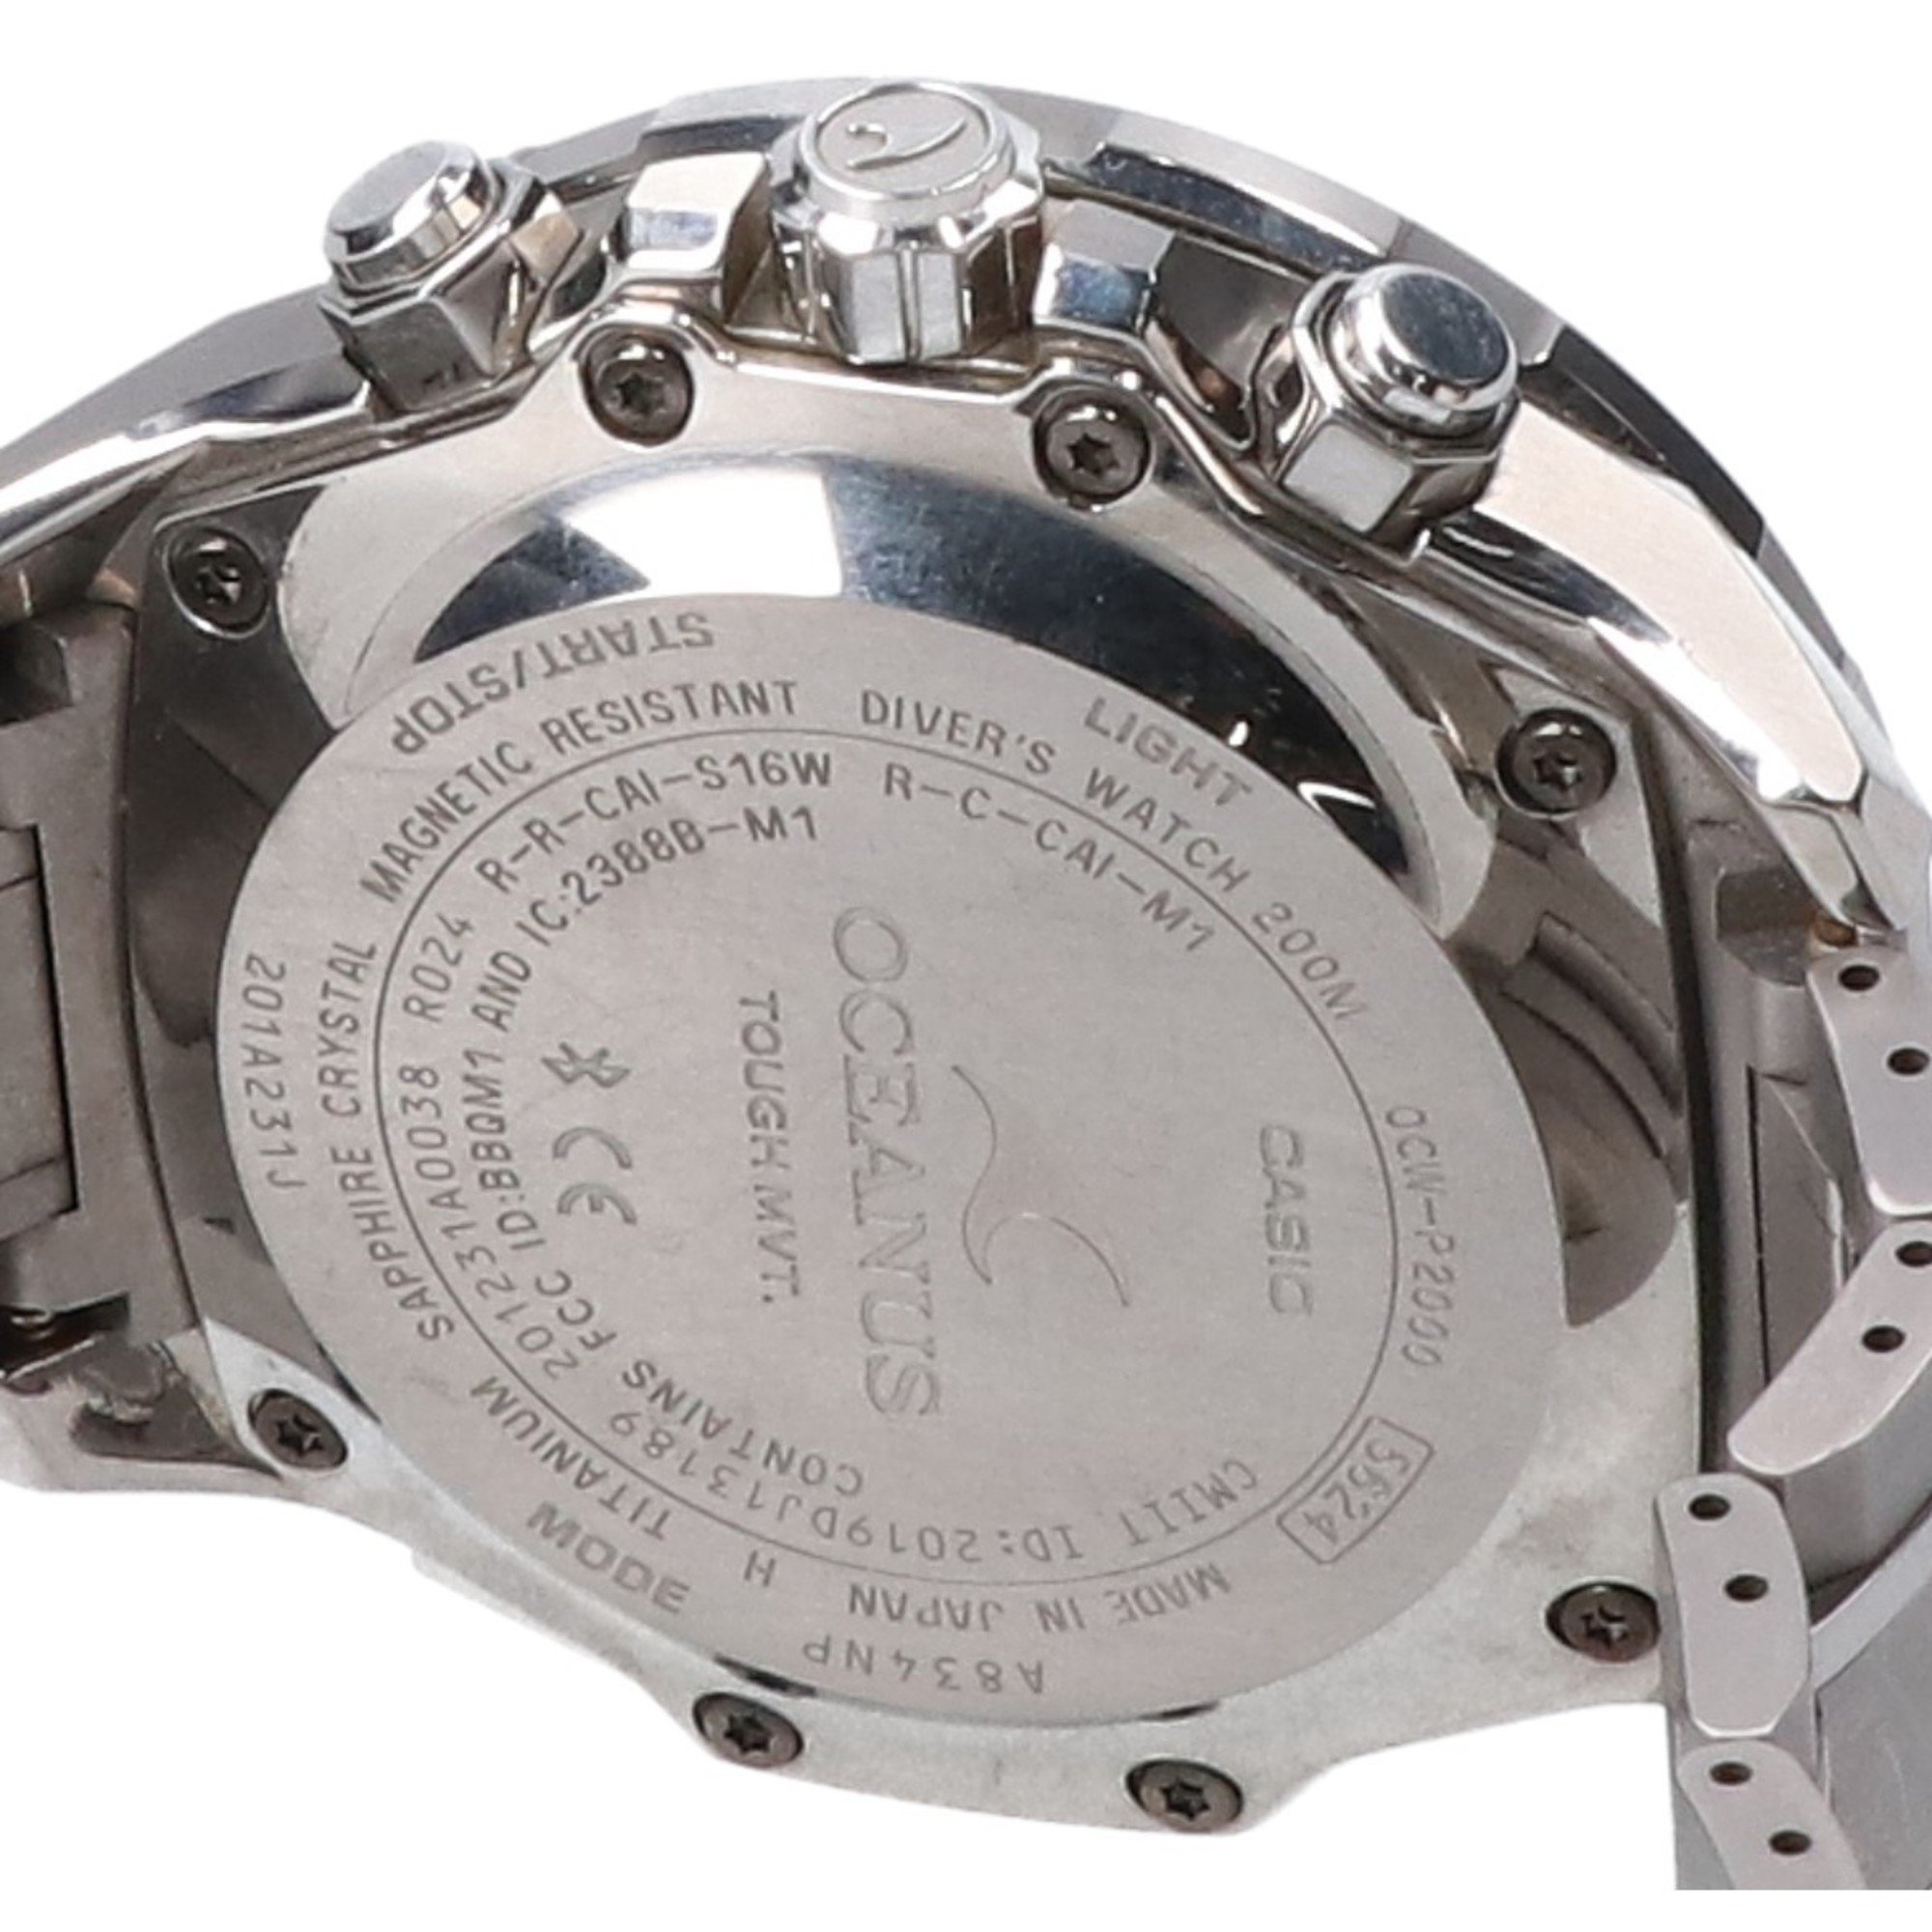 CASIO OCW-P2000-1AJF OCEANUS CACHALOT Divers Tough Solar Radio Watch Silver Men's